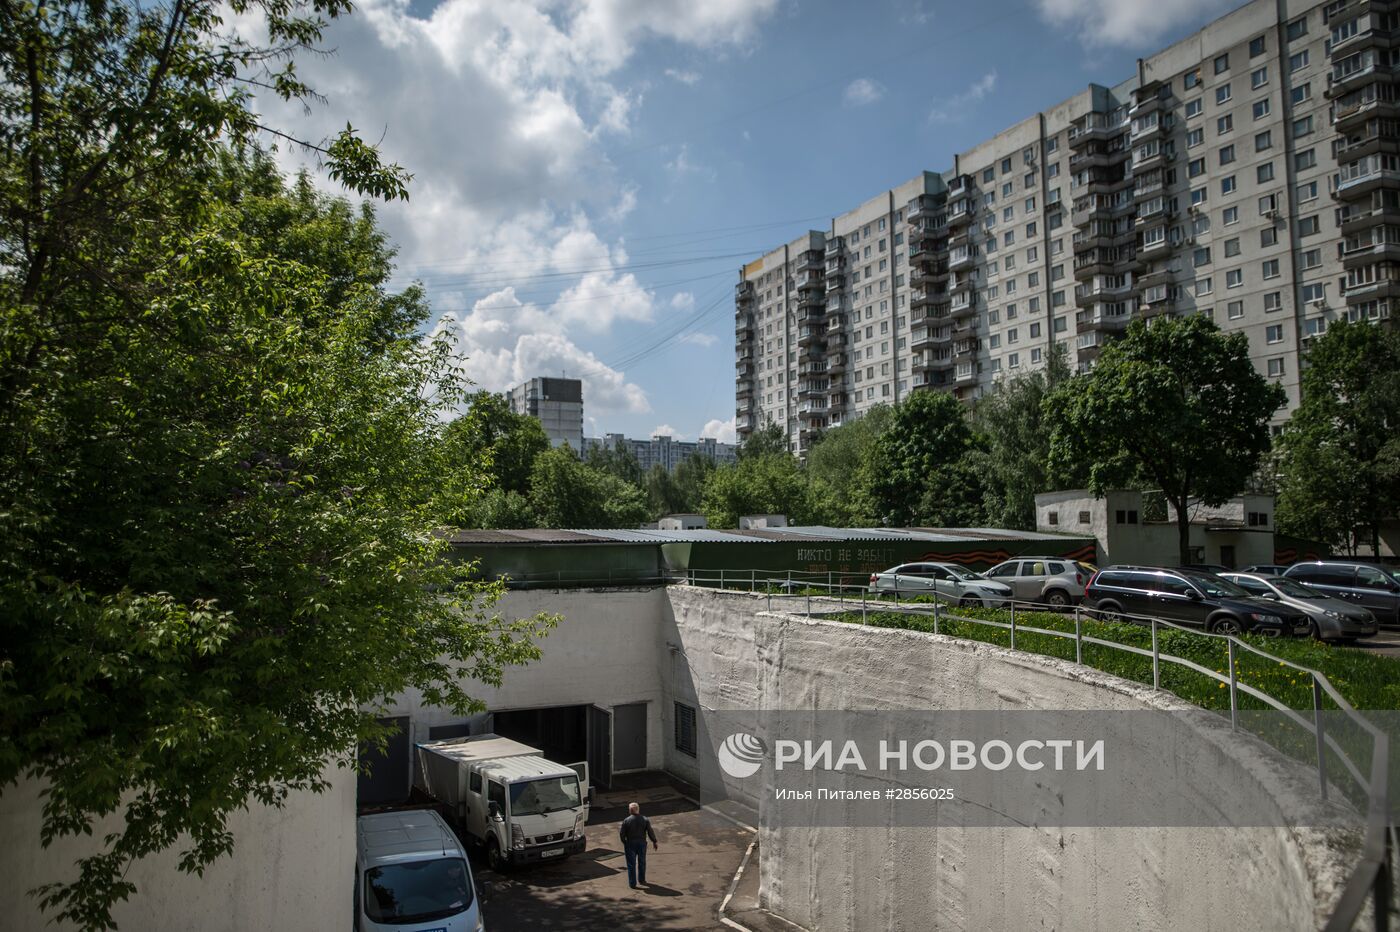 Бомбоубежище на Алтуфьевском шоссе в Москве